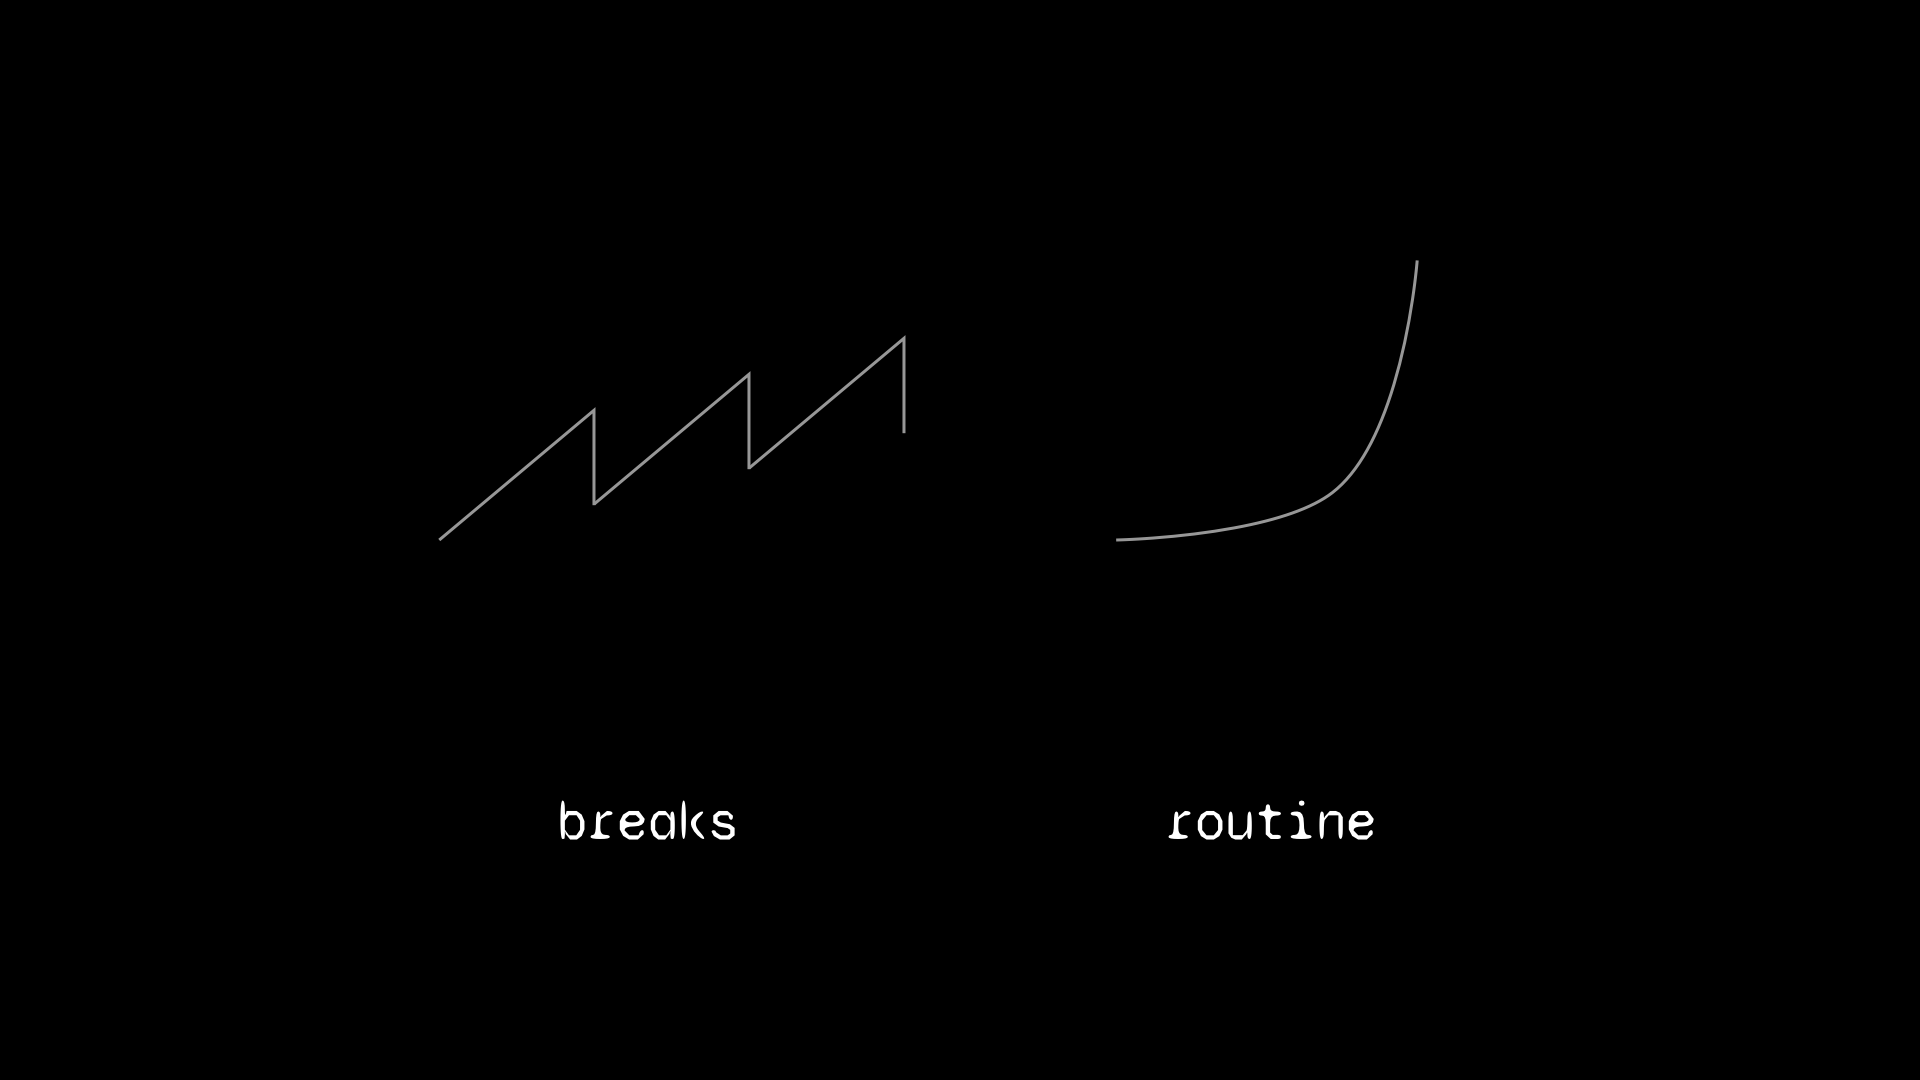 break vs routine